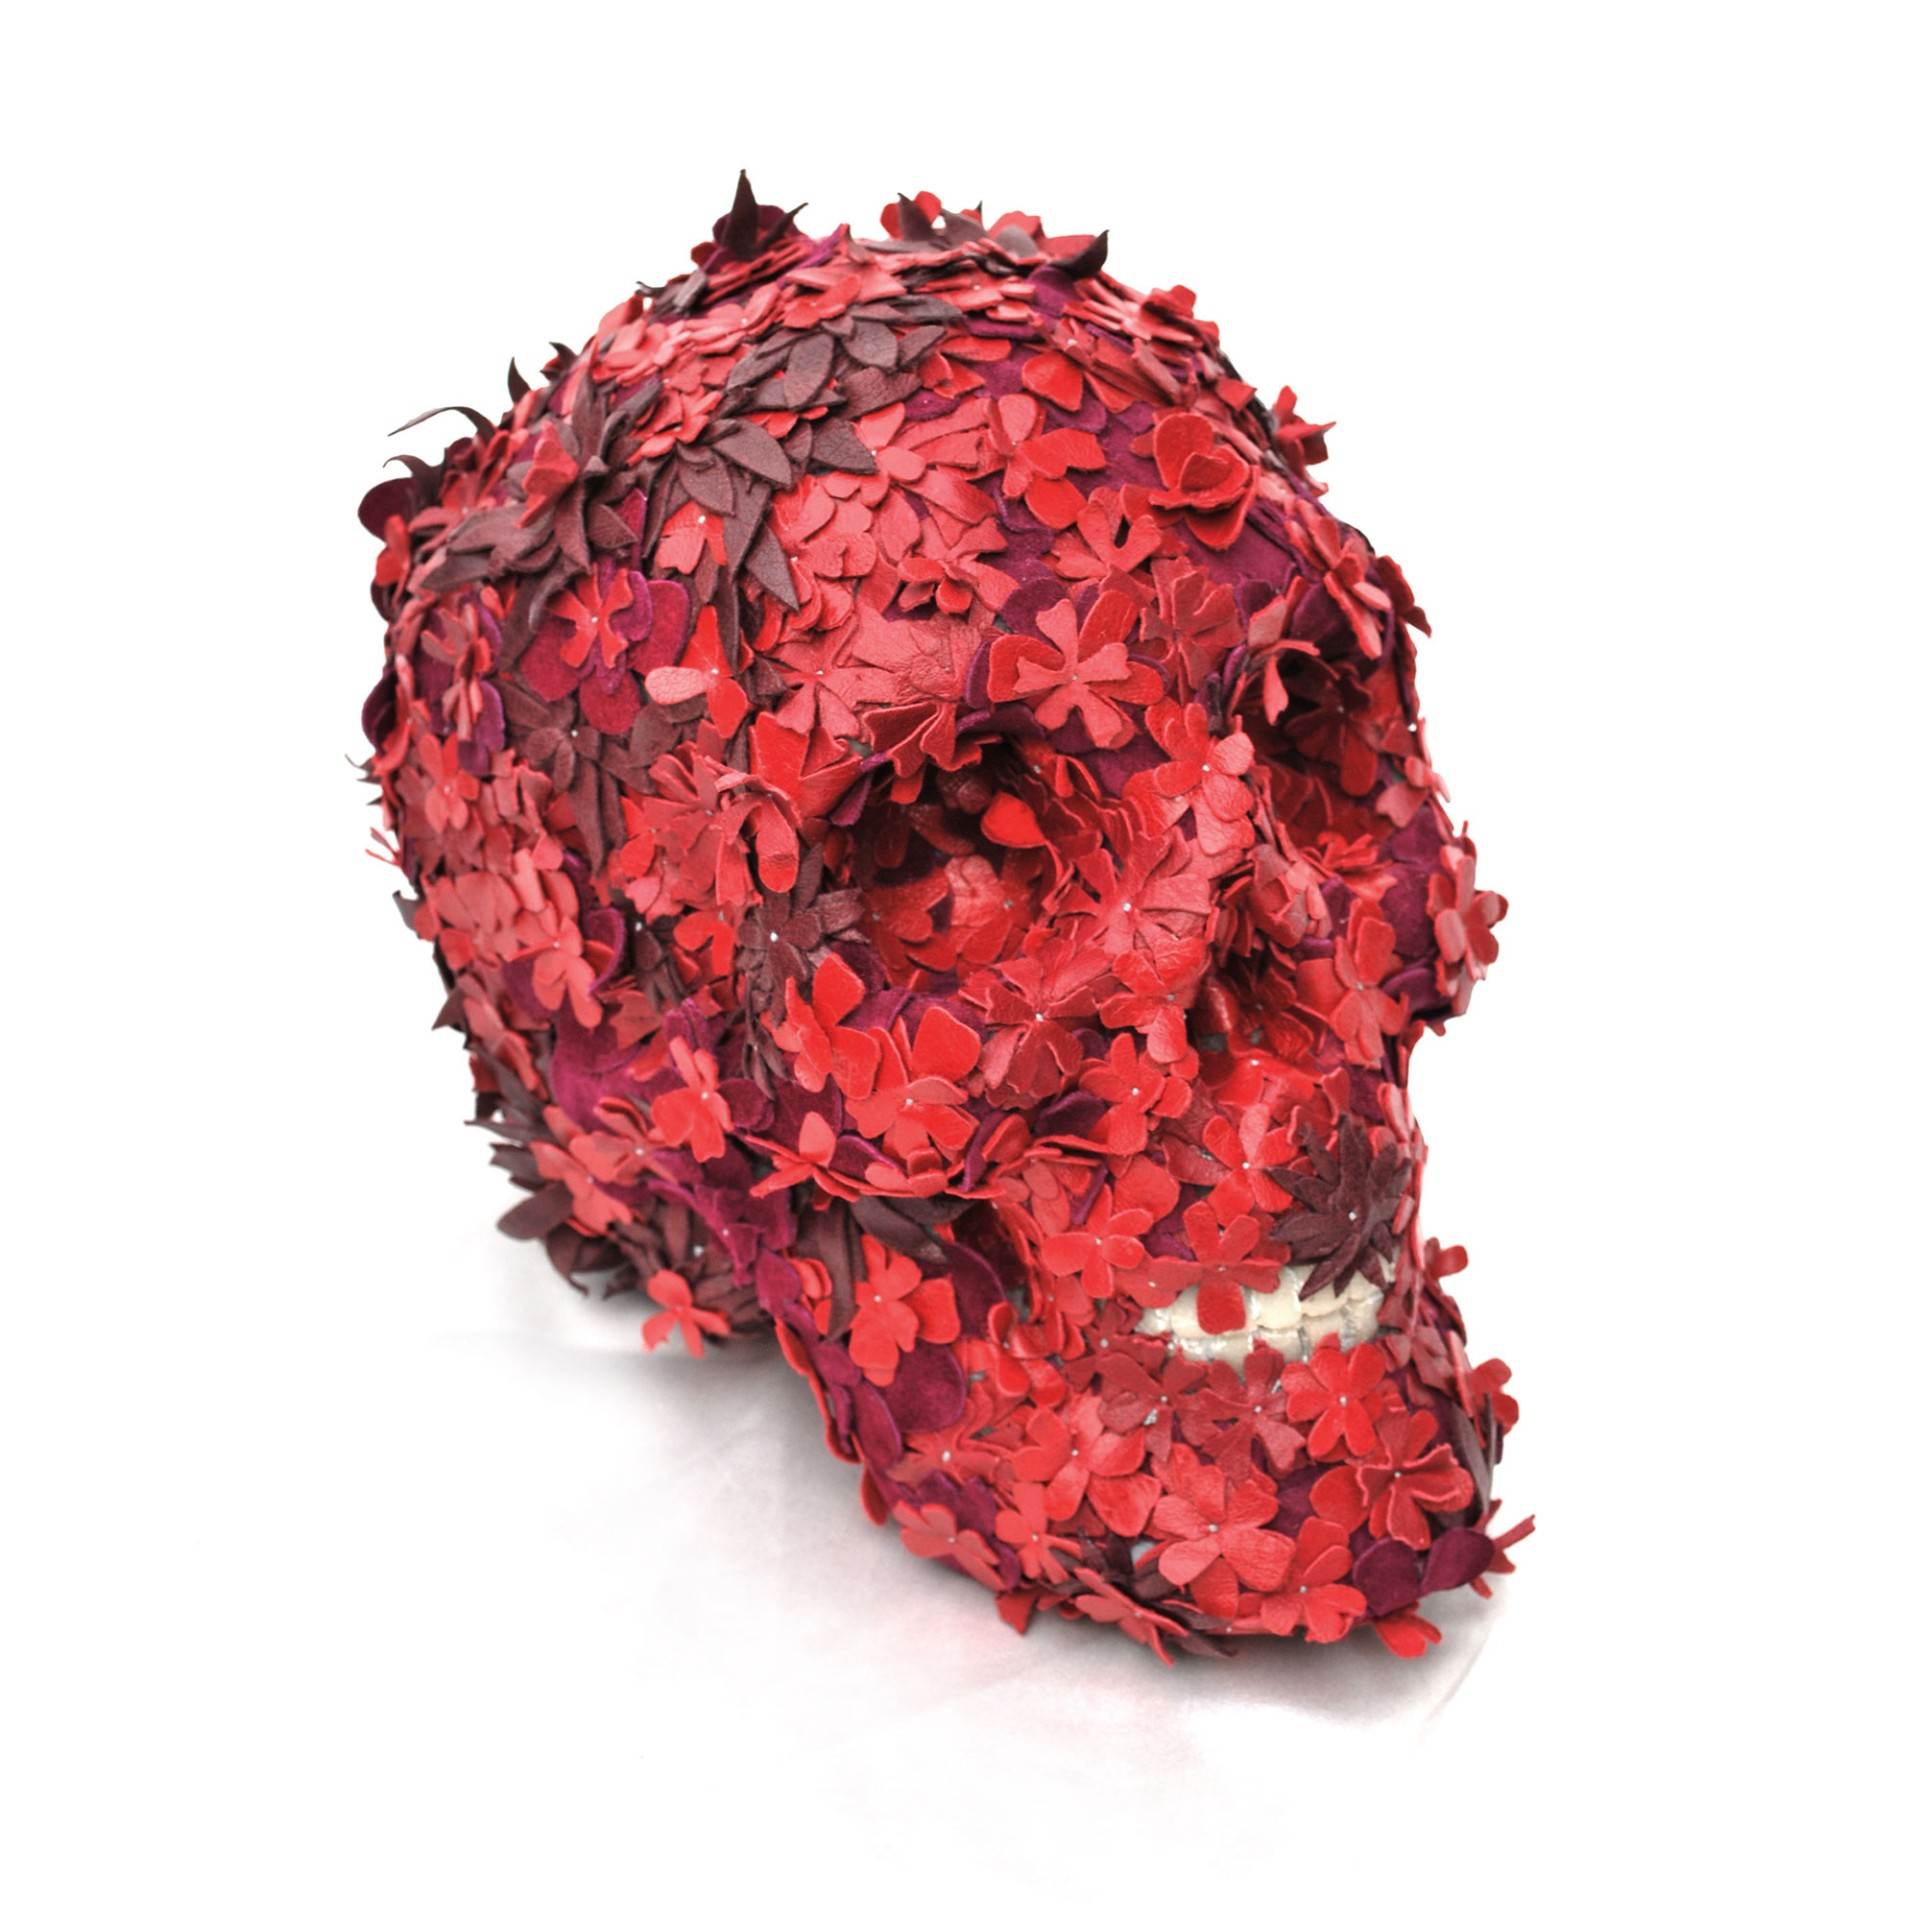 Life-size Floral Skullpture